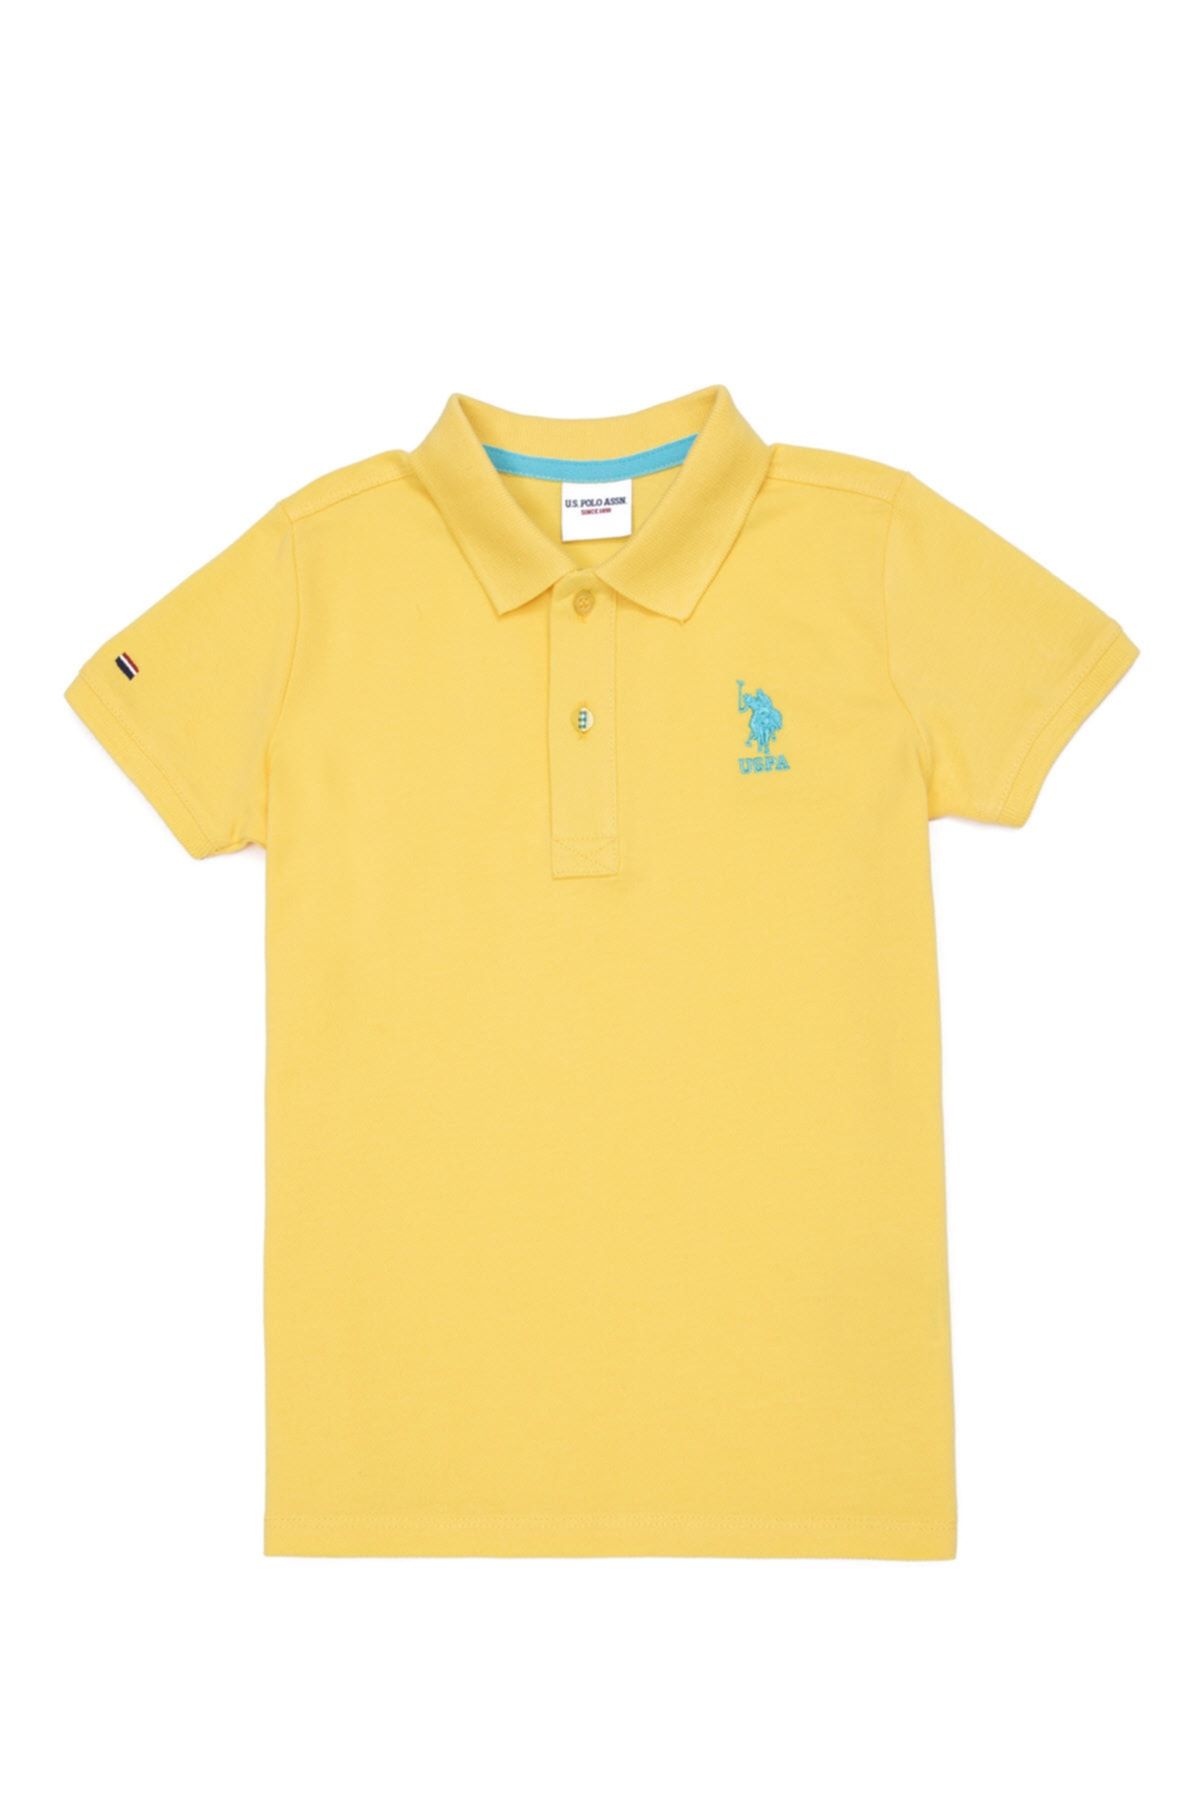 U.S. Polo Assn. Sarı Erkek Çocuk T-Shirt